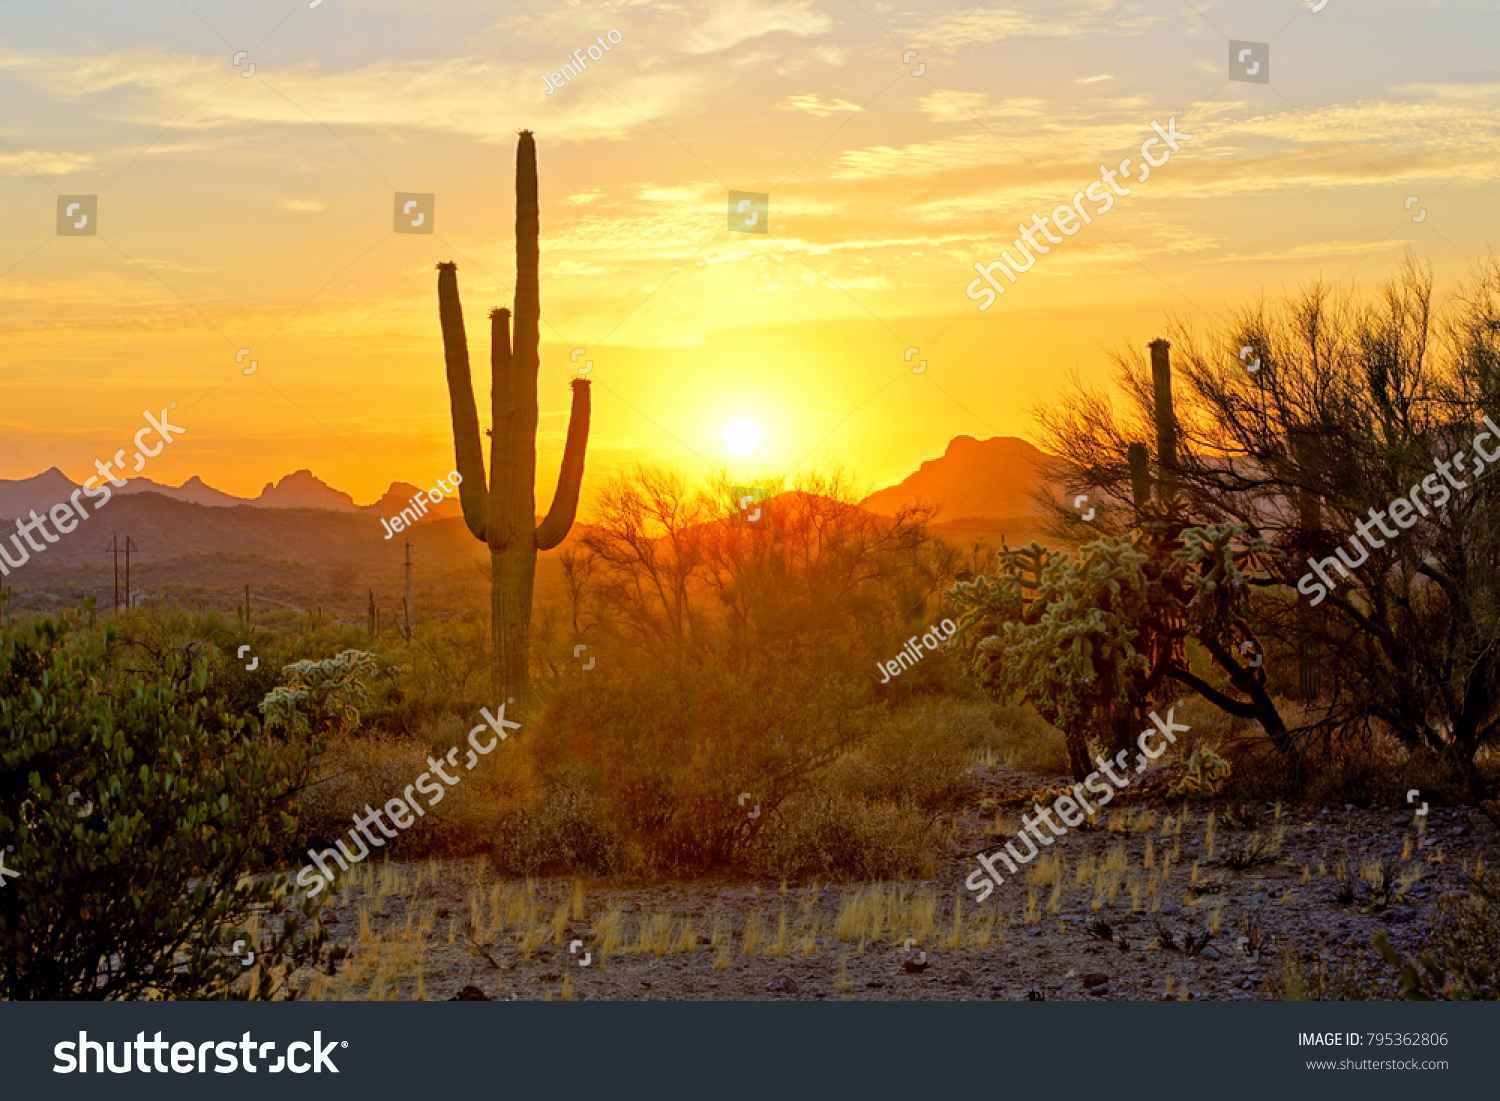 196,715 Arizona sky Images, Stock Photos & Vectors | Shutterstock